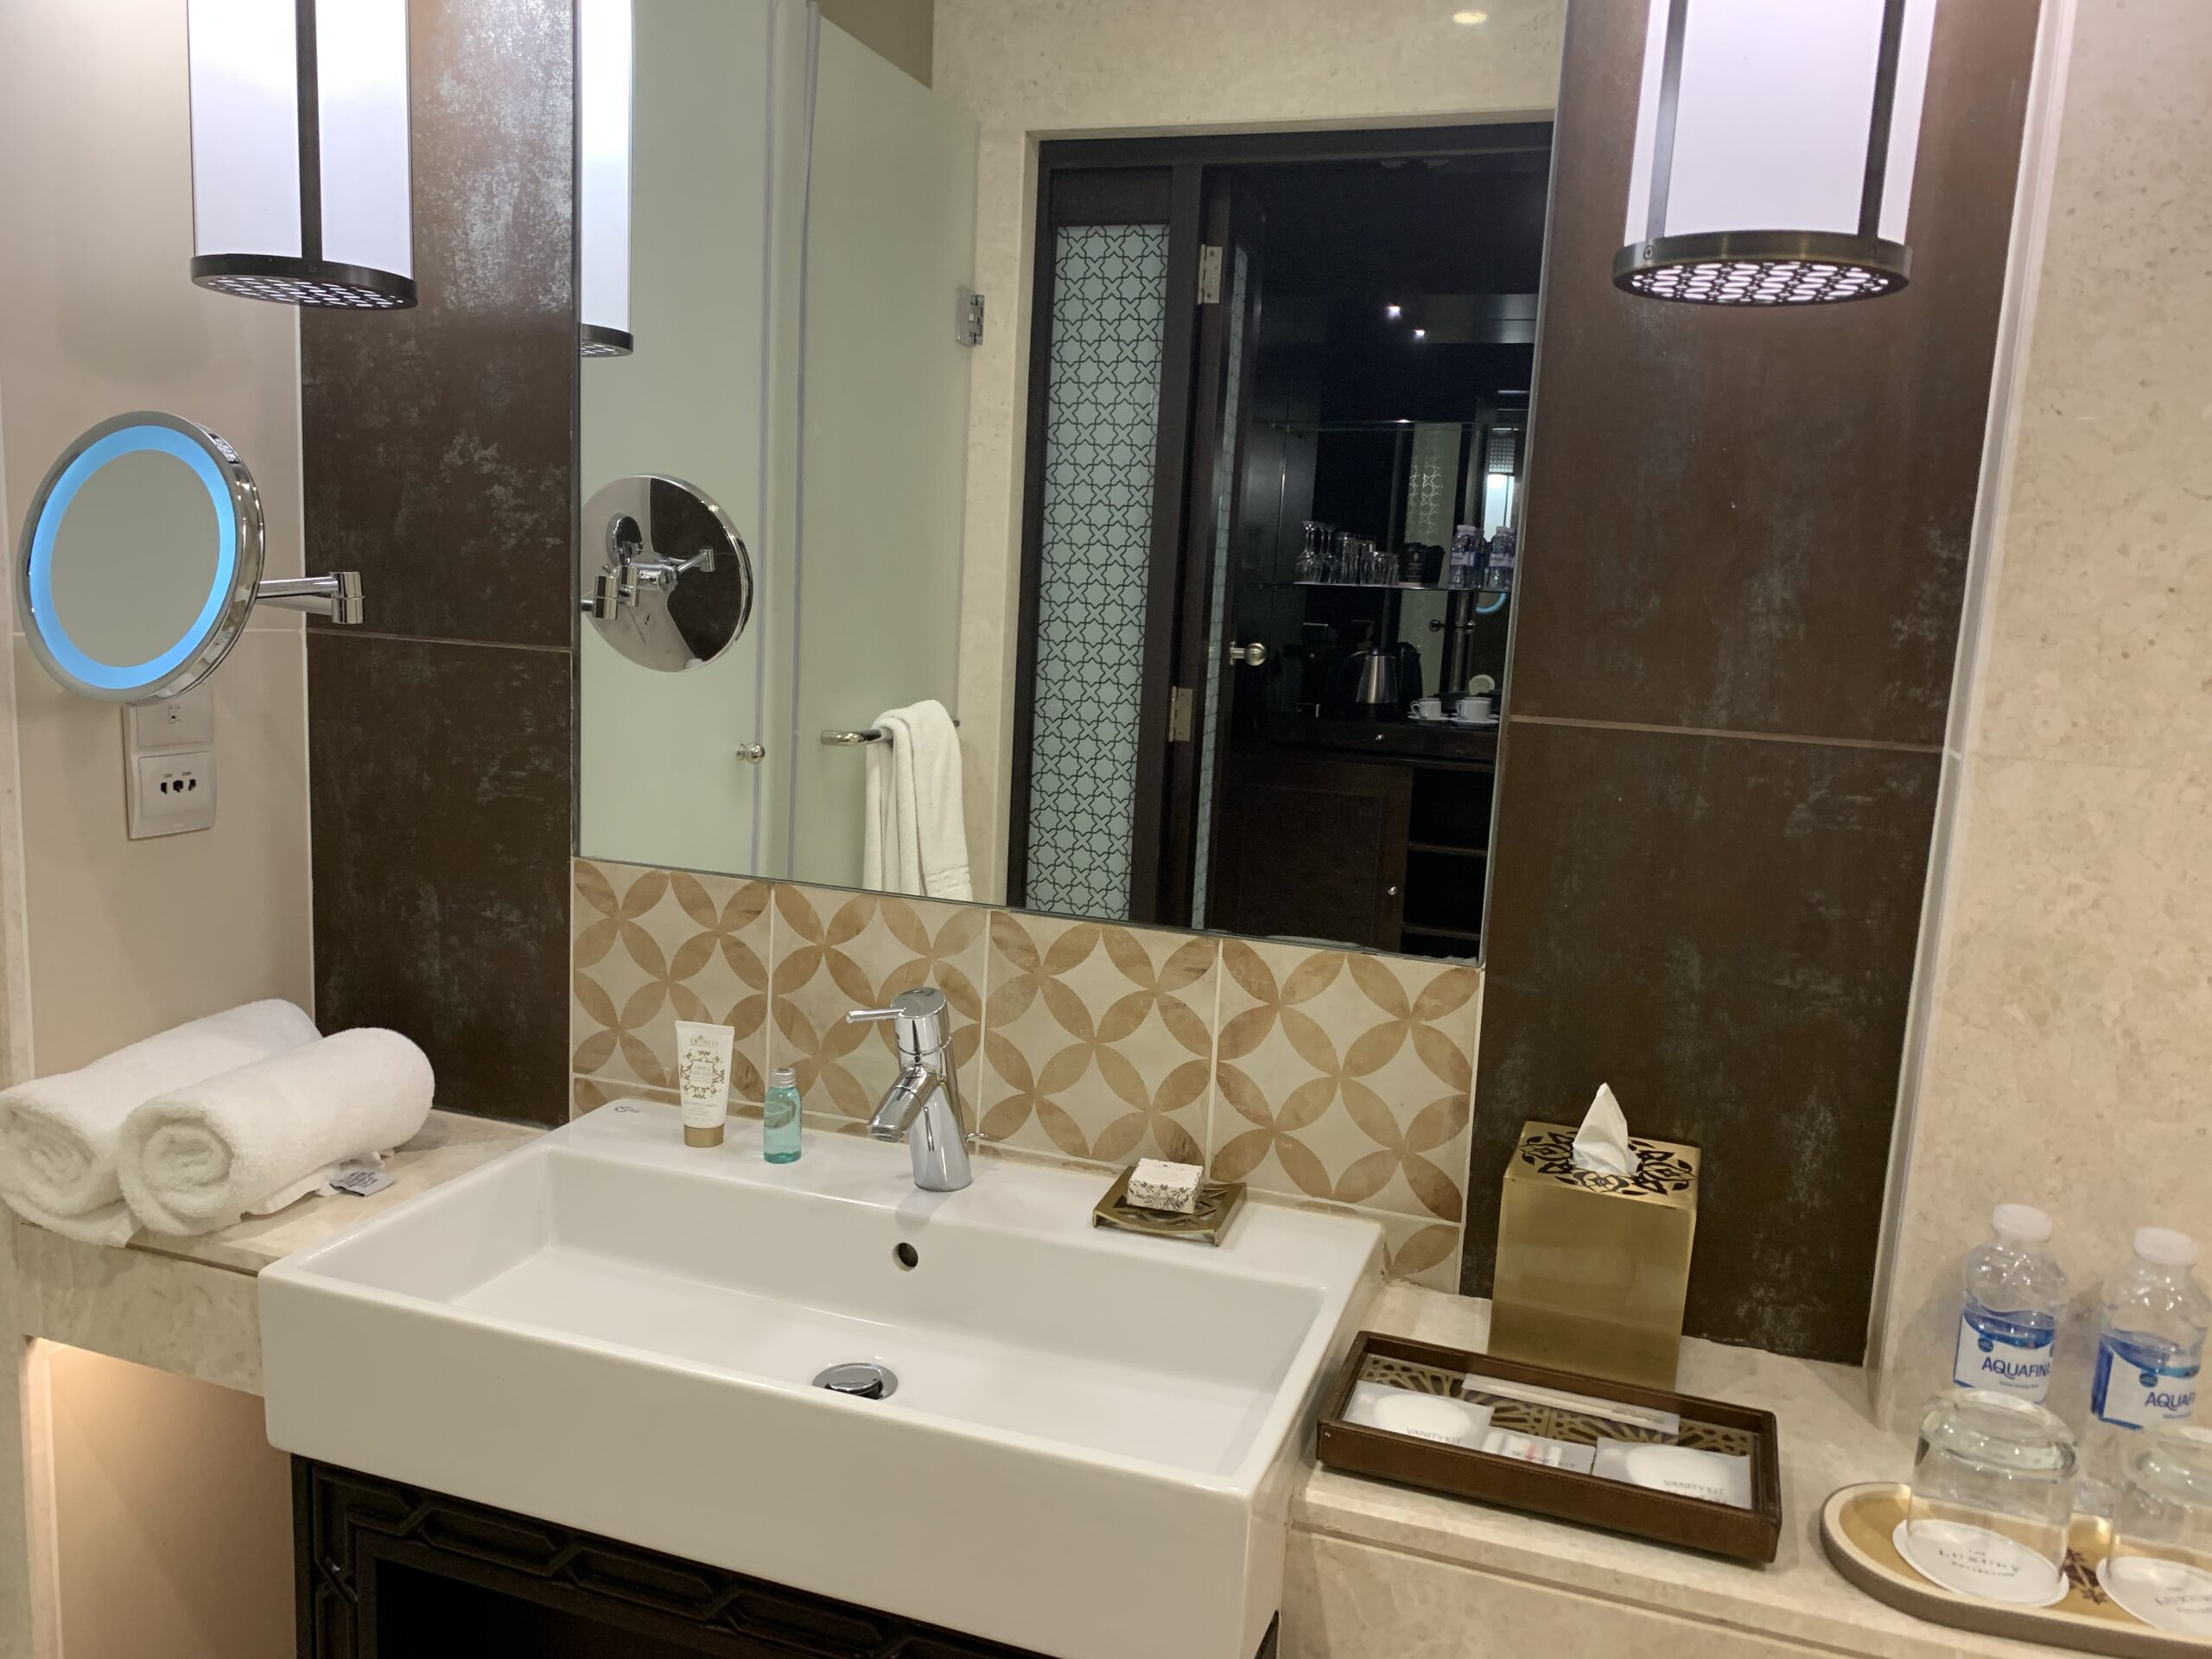 Al Manara Aqaba - Bathroom vanity sink